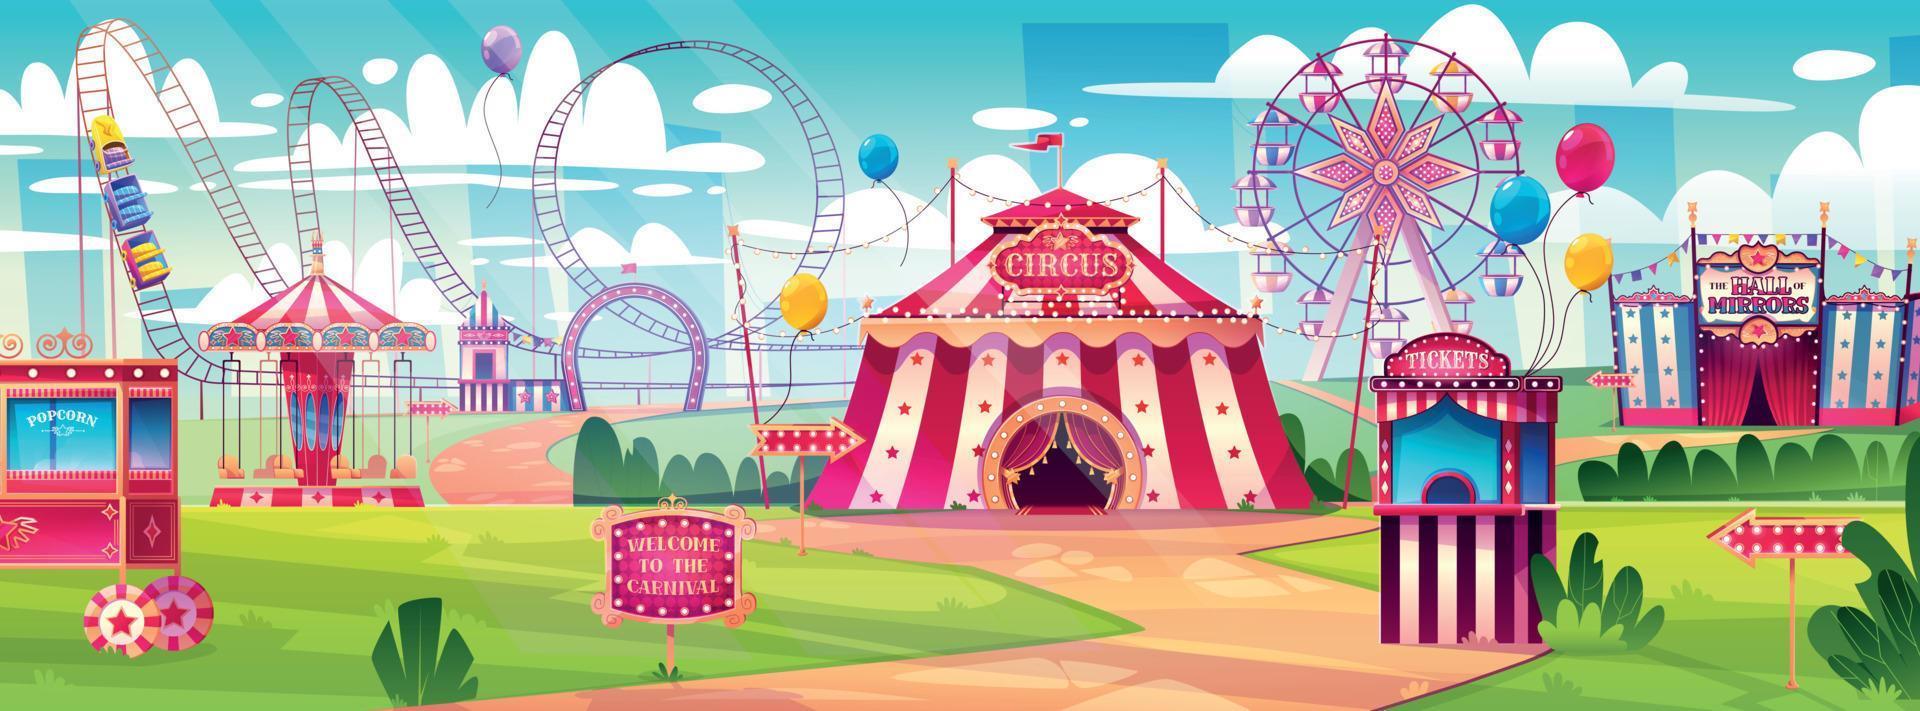 divertimento parco, carnevale, luna park con circo tenda vettore